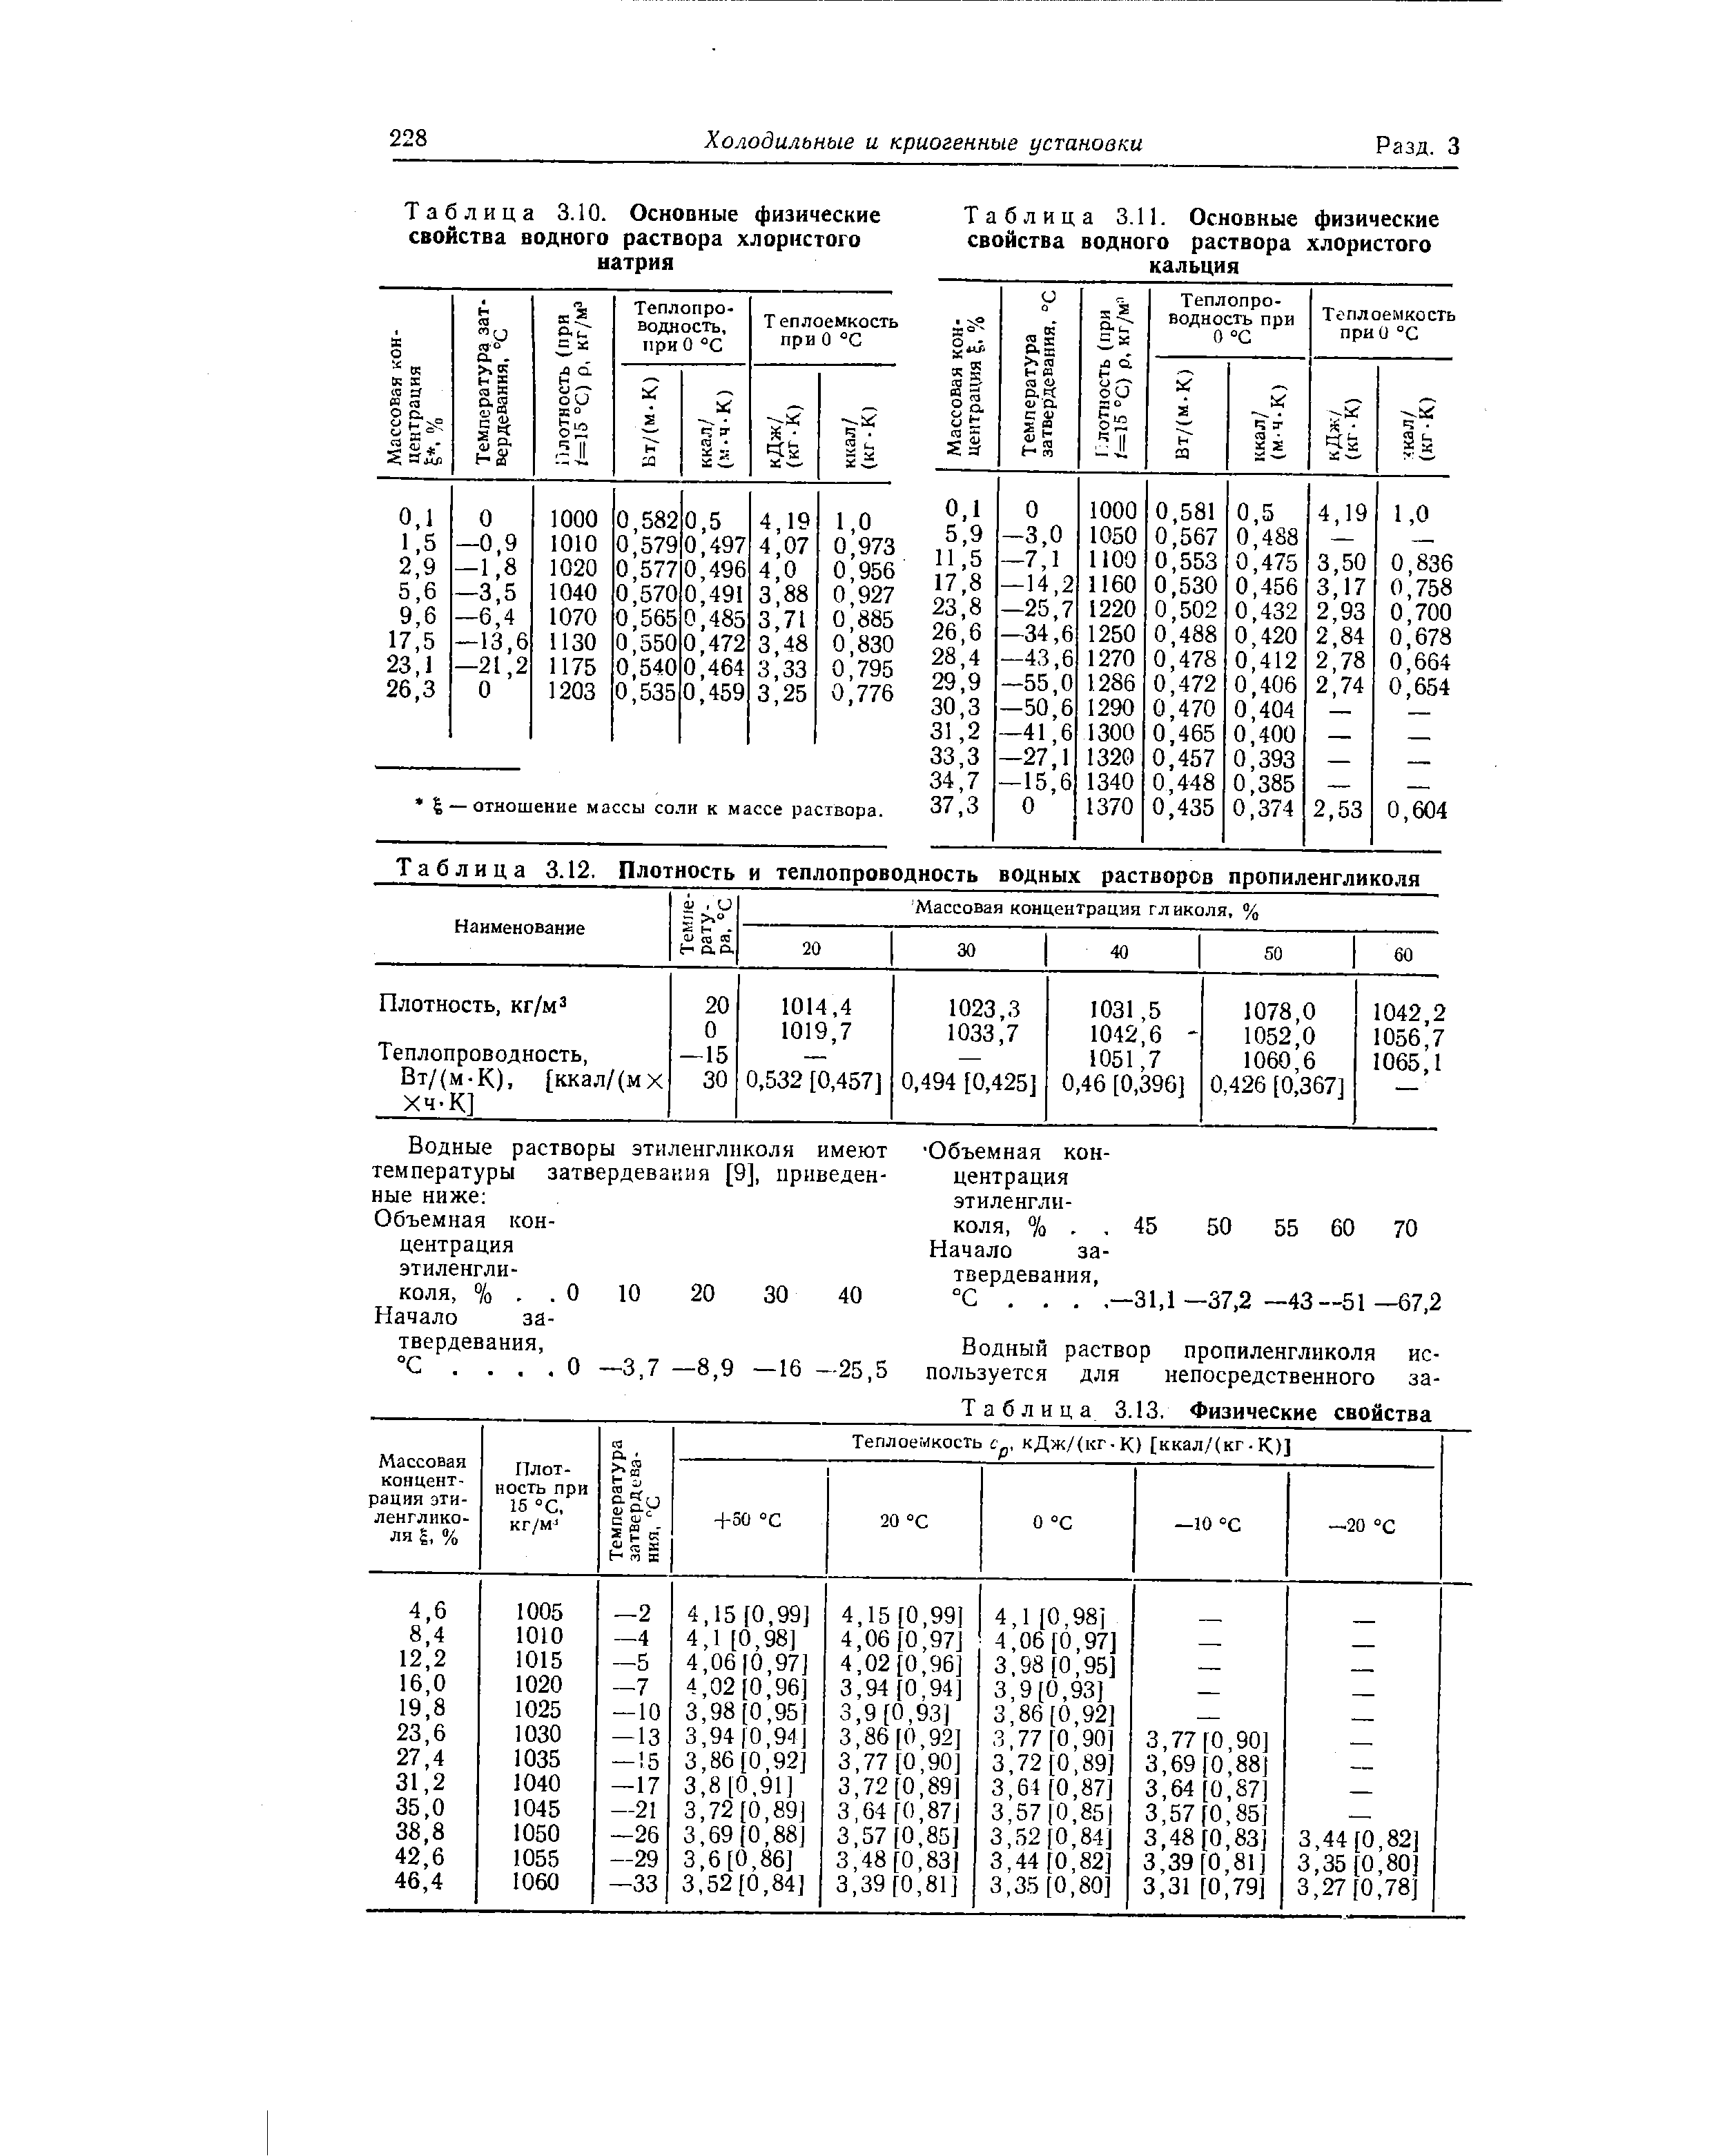 Таблица 3.12. Плотность и теплопроводность водных растворов пропиленгликоля
